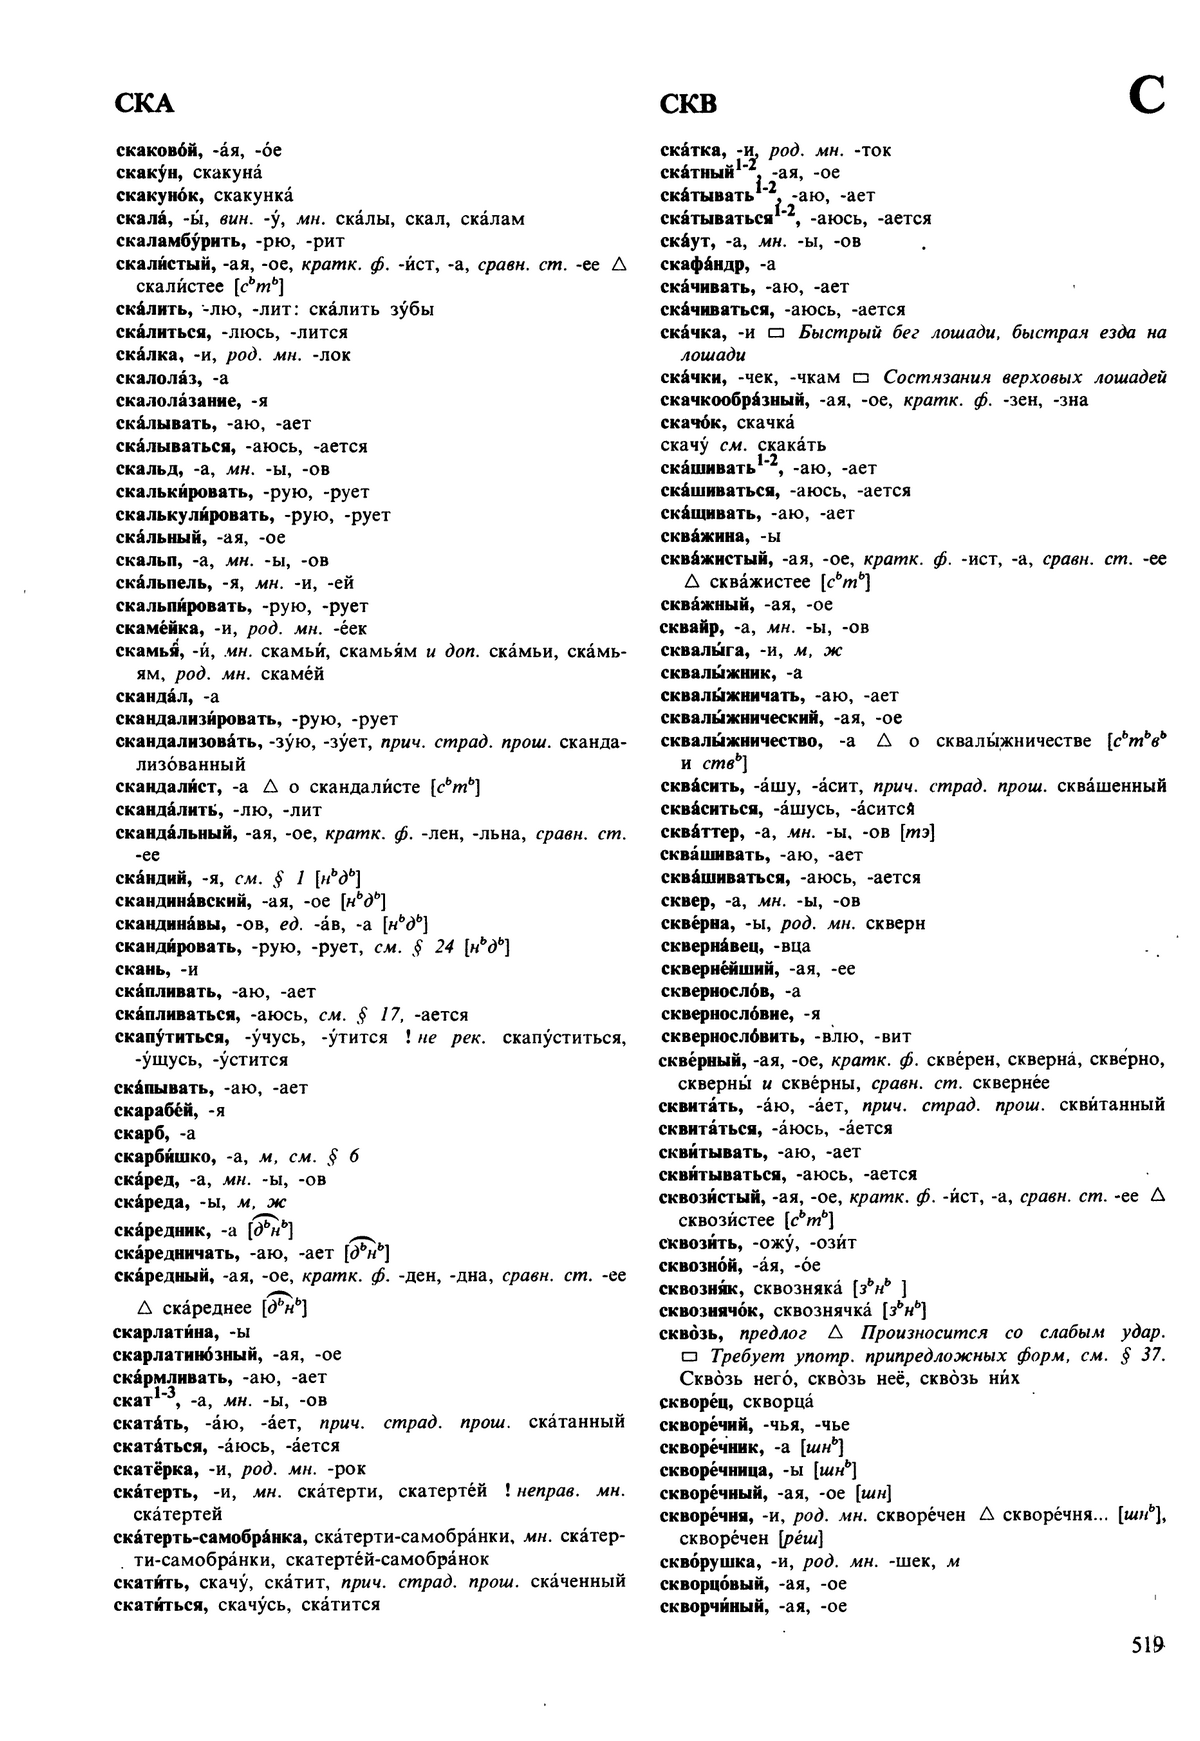 Фотокопия pdf / скан страницы 519 орфоэпического словаря под редакцией Аванесова (5 издание, 1989 год)